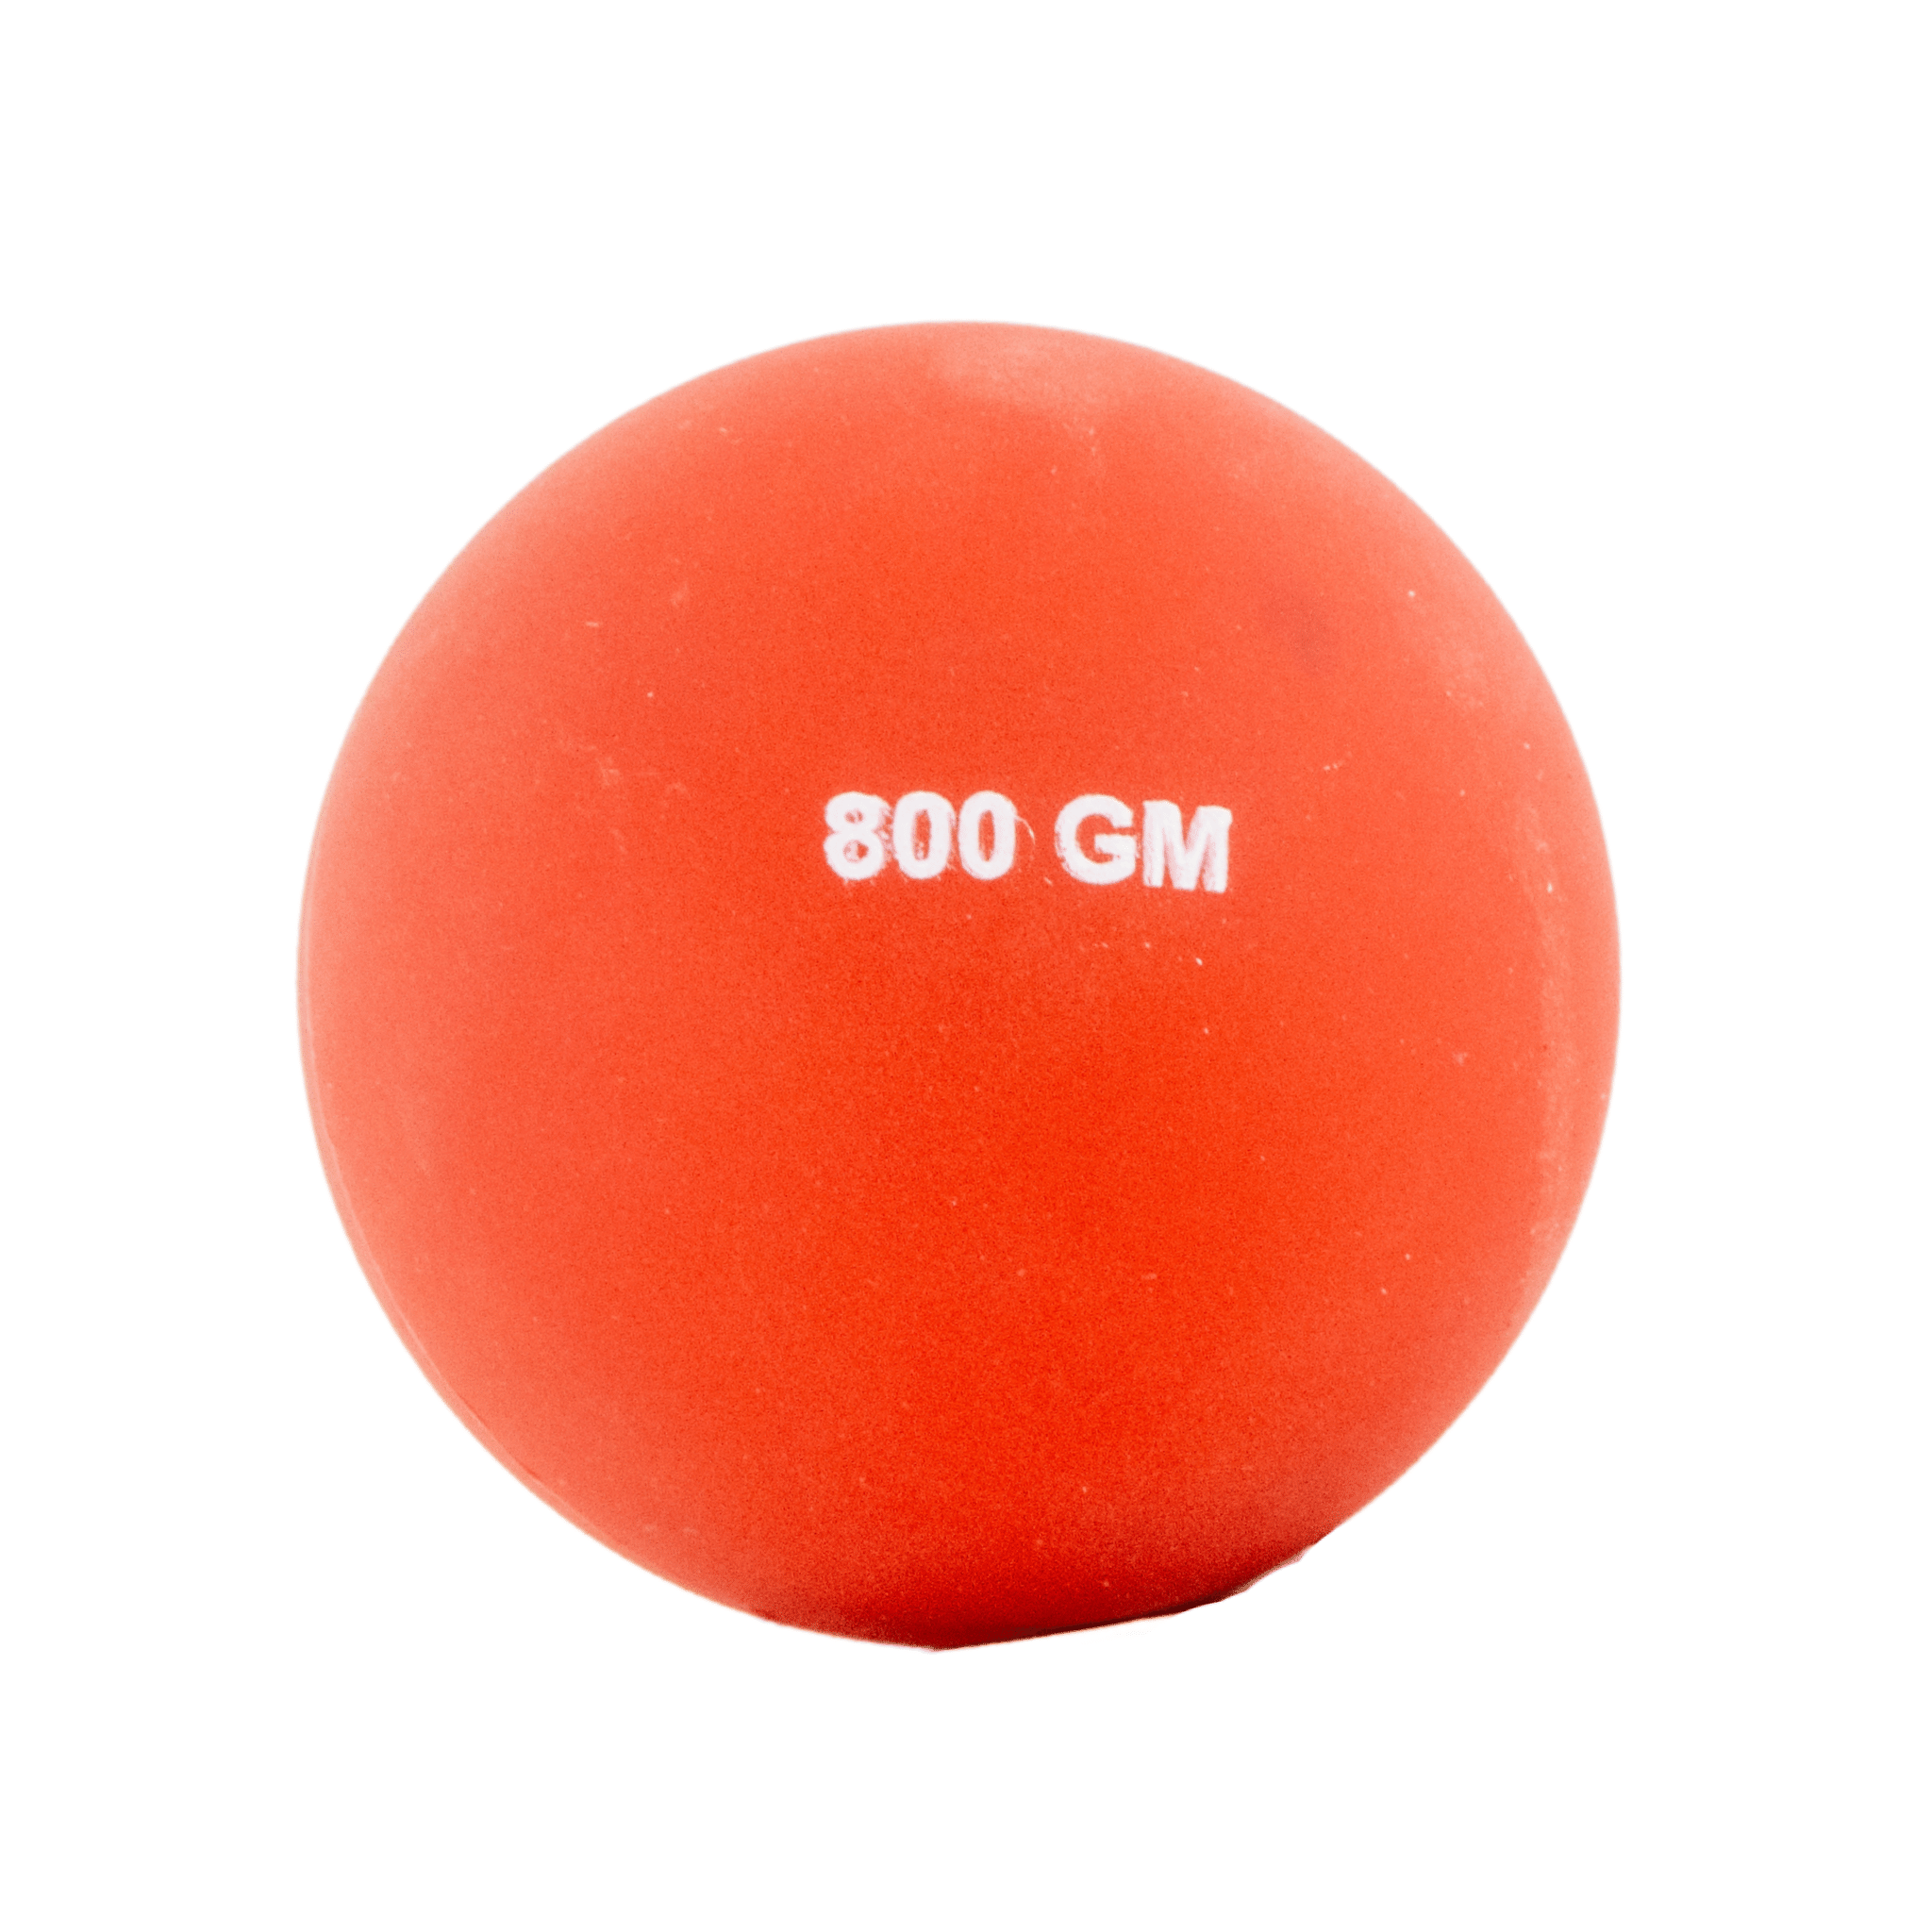 800g Javelin Throwing Ball | PVC